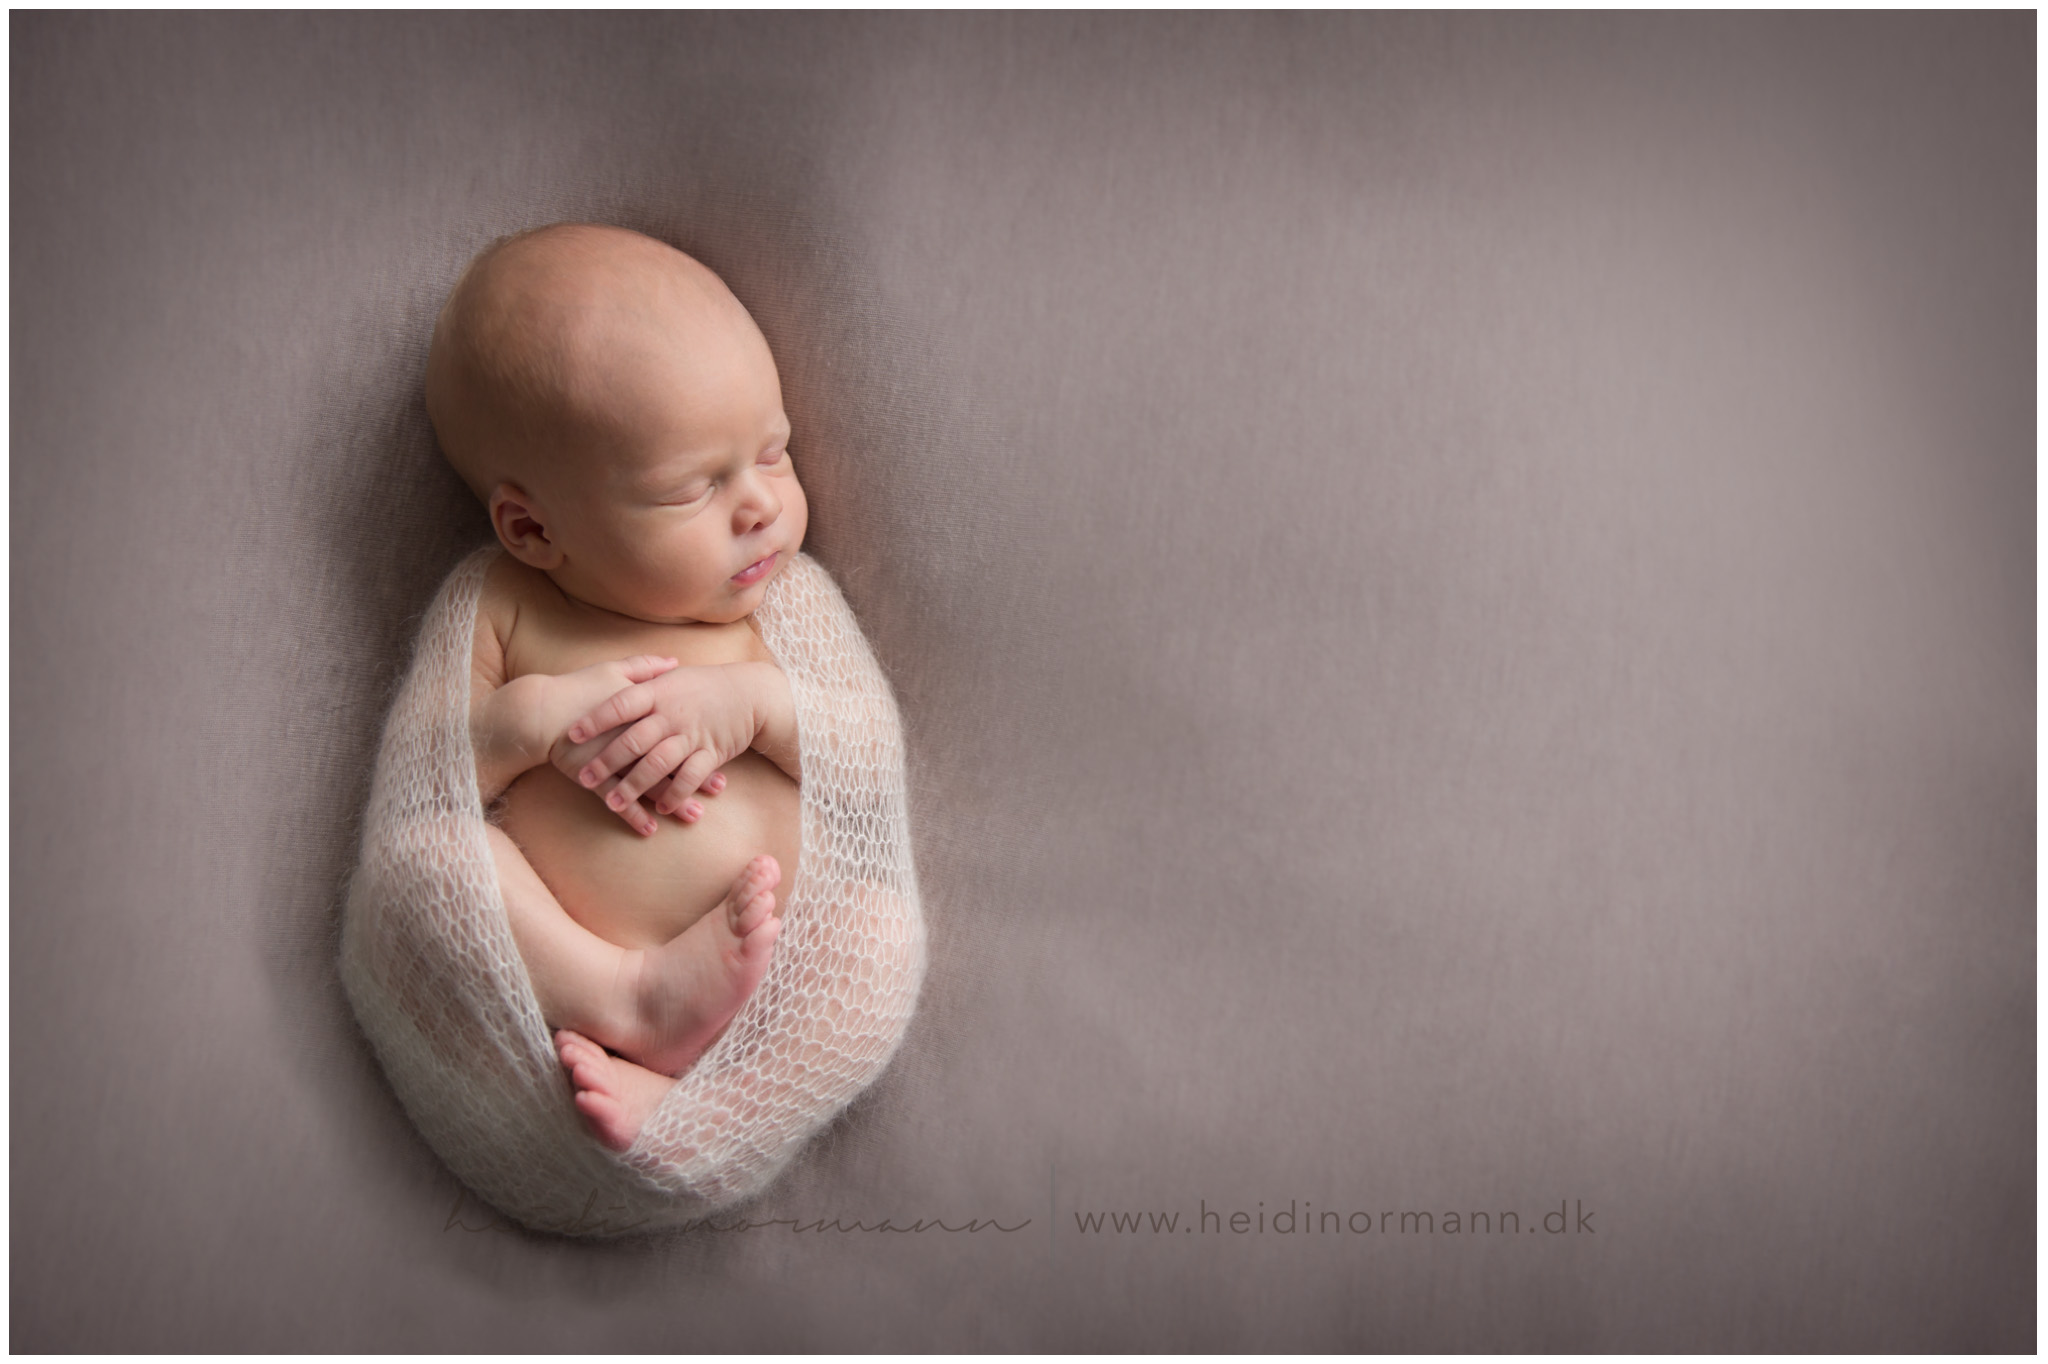 næstved-nyfødtfotograf-heidi-normann-newborn